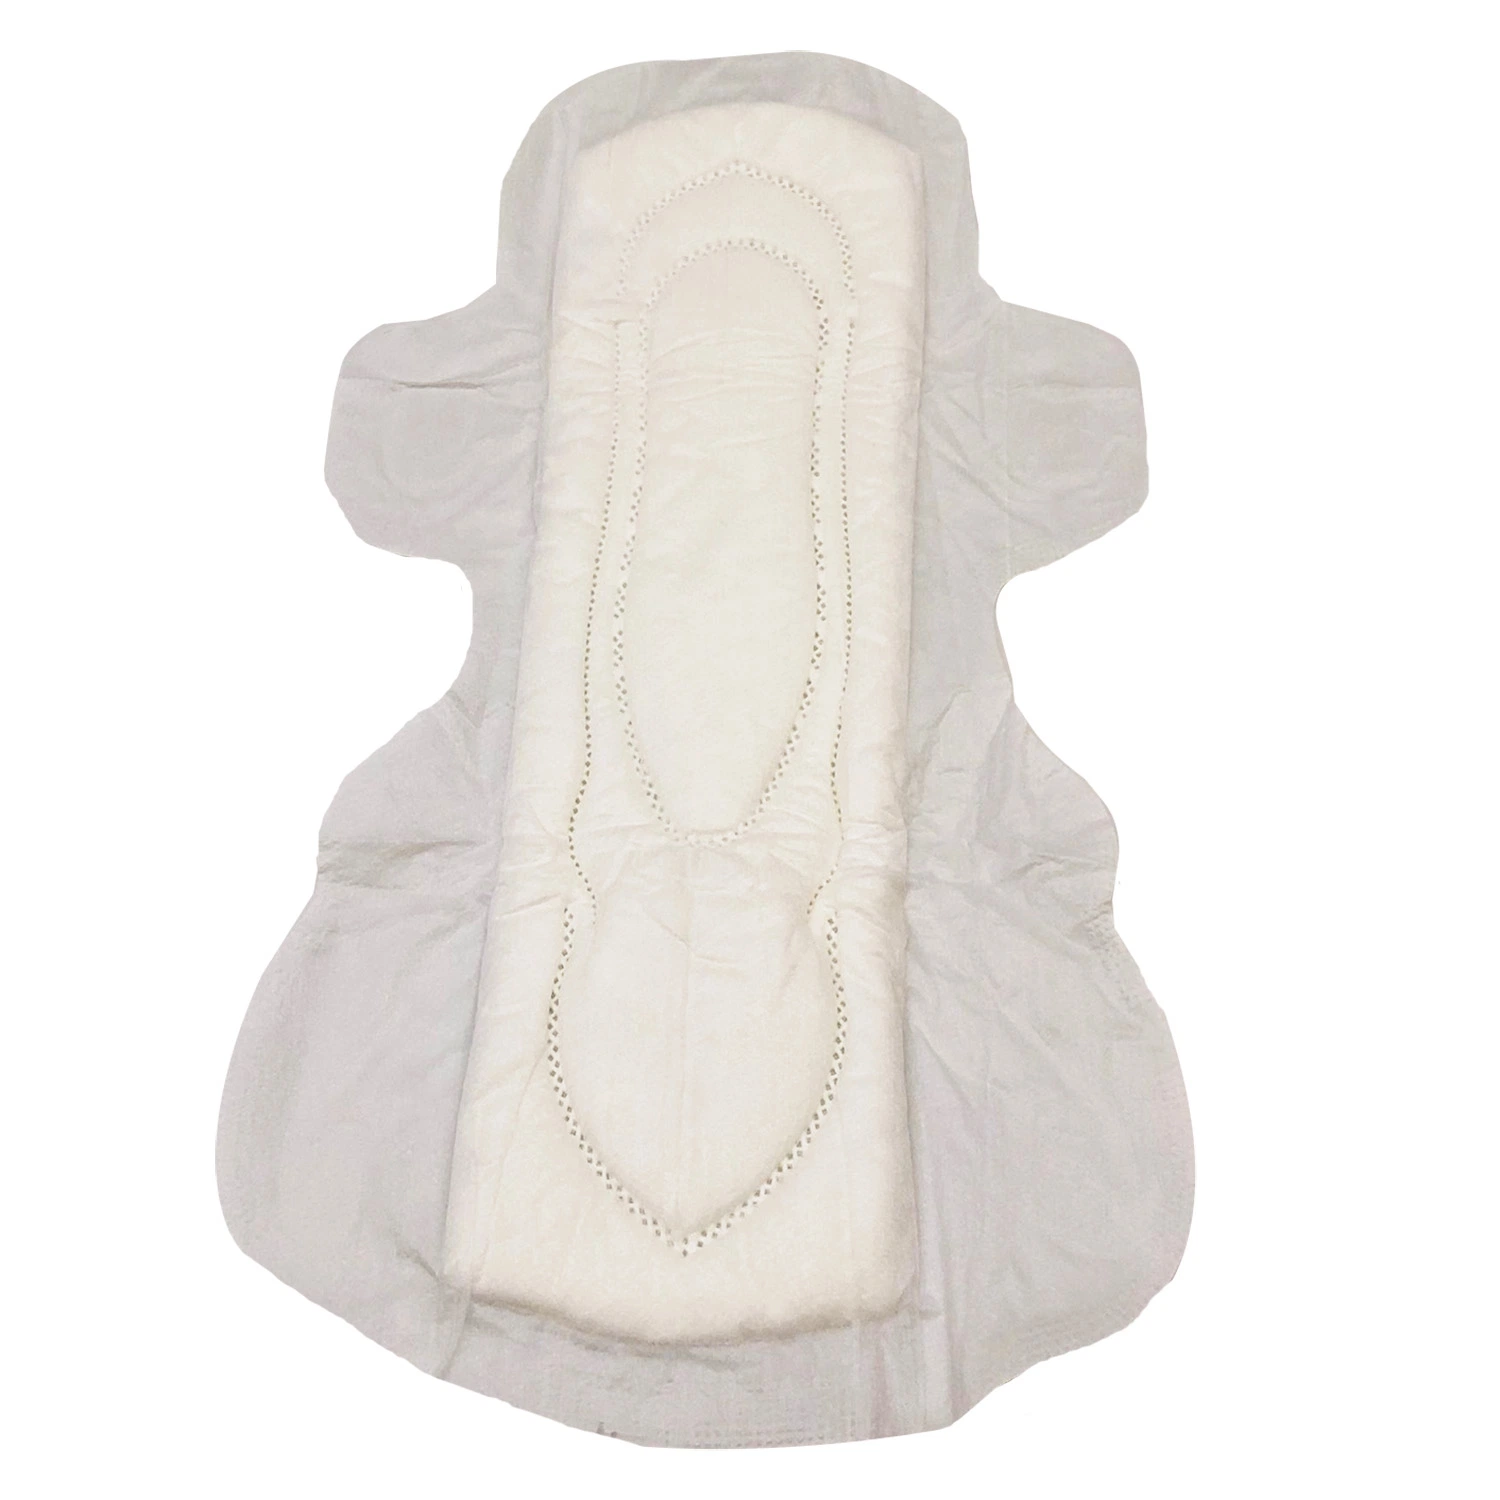 Alta calidad de atención de la señora desechables toalla sanitaria fabricante de China